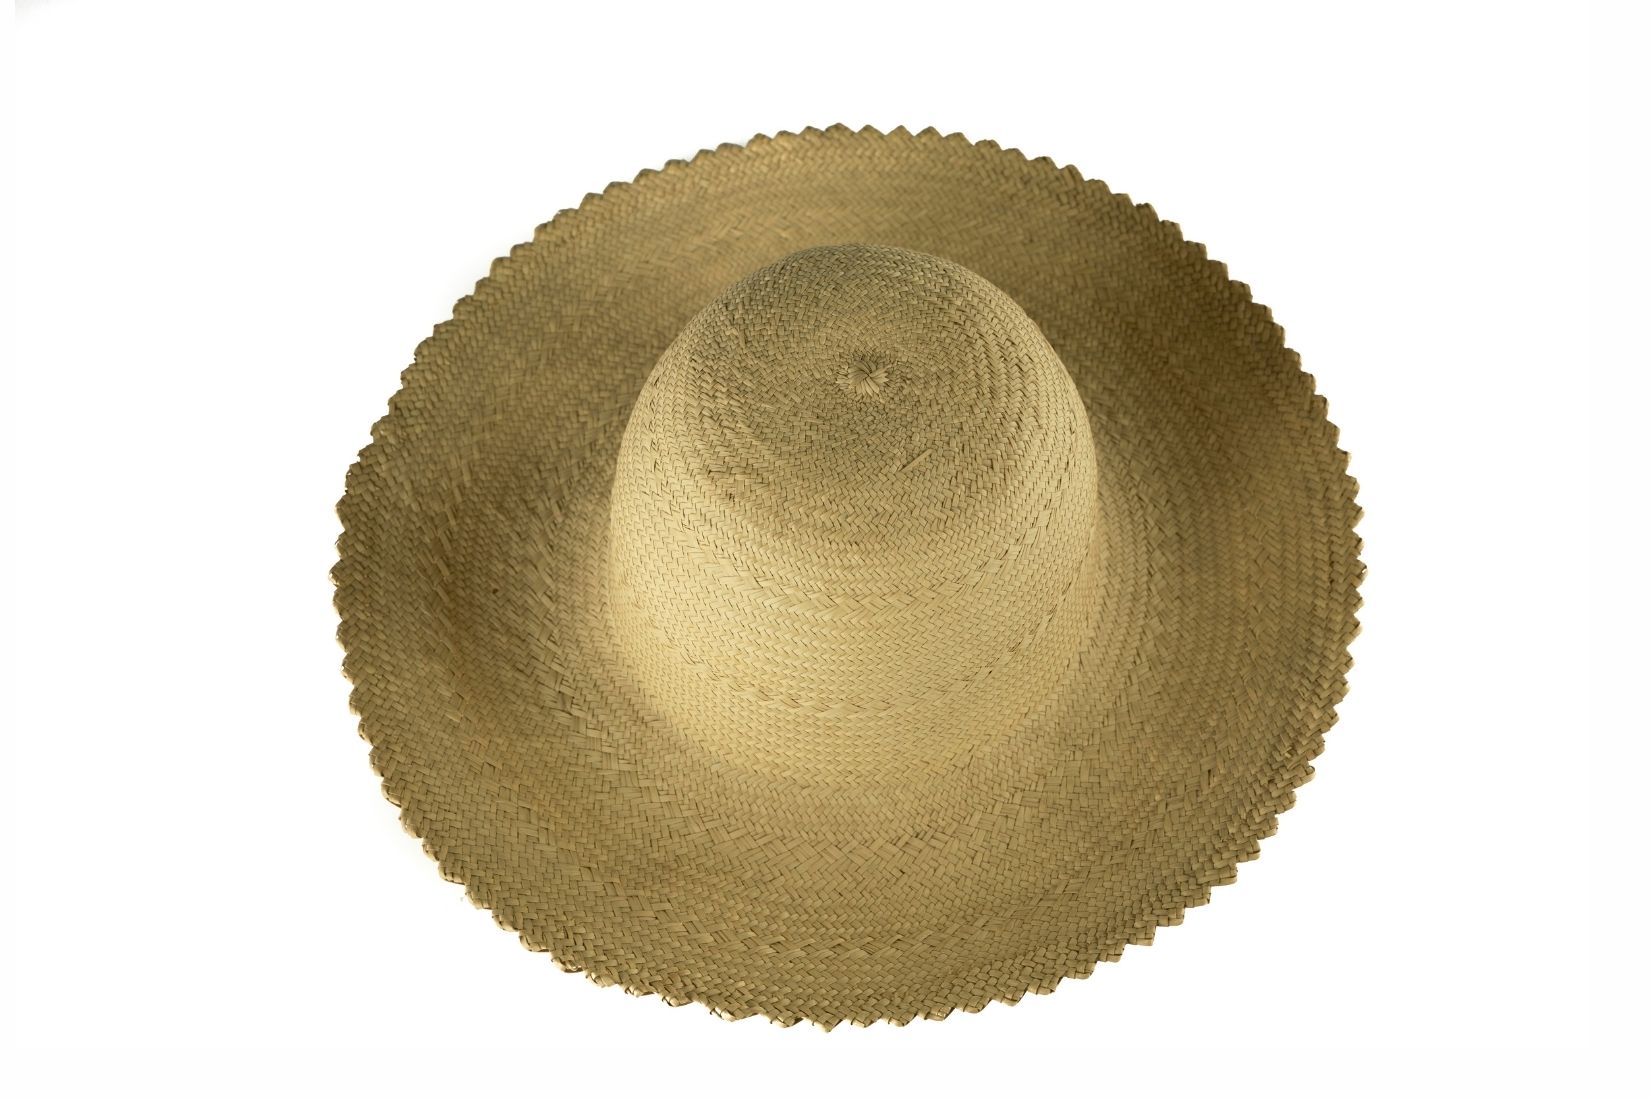 Sombrero de palma tejida. Artesano y procedencia desconocida. Col. Populart. (Foto: EKV).